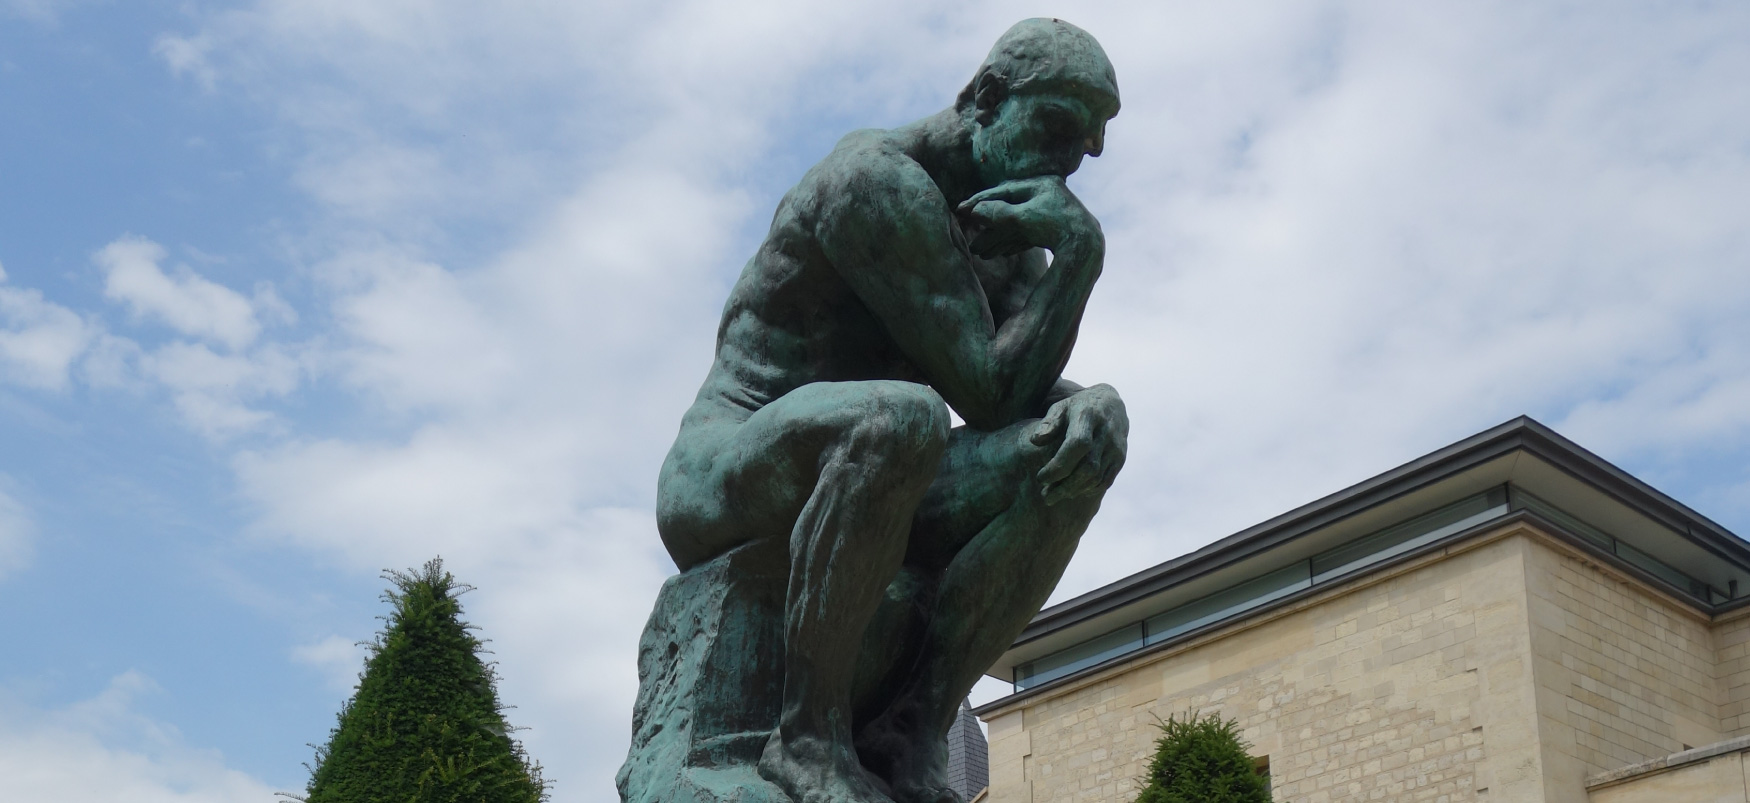 Grande escultura em bronze de um homem sentado em uma posição curvada, cotovelo no joelho e queixo na mão. Ele olha pensativamente para um espaço próximo.